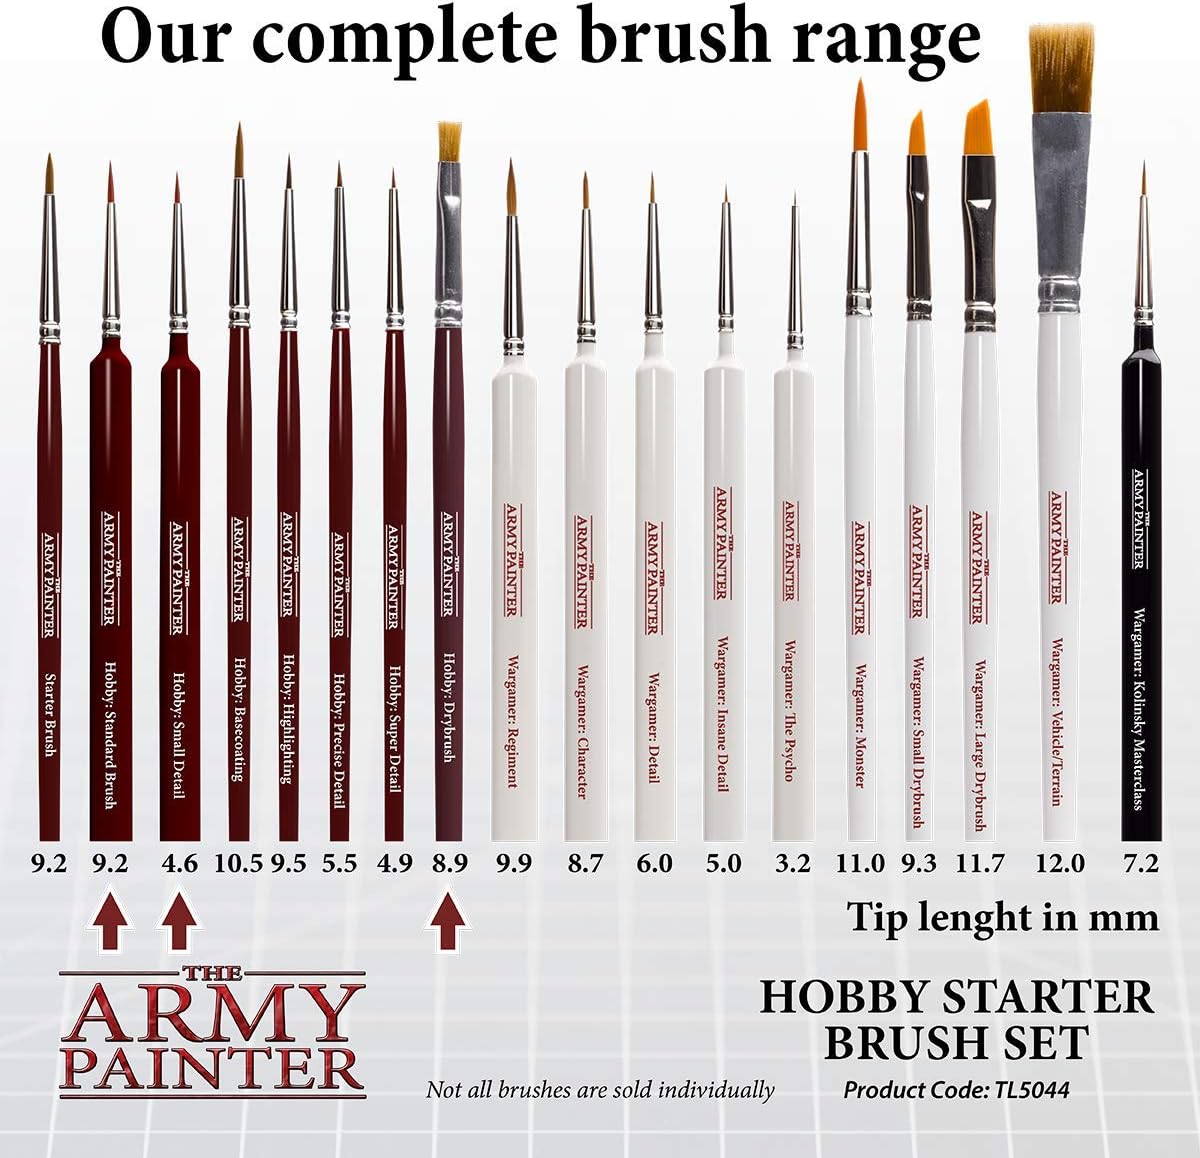 The Army Painter Hobby Brush Starter Set -Miniature Small Paint Brush Set of 3 Acrylic Paint Brushes-Includes Drybrush, Standard Model Paint Brush & Detail Fine Tip Paint Brush for Acrylic Painting